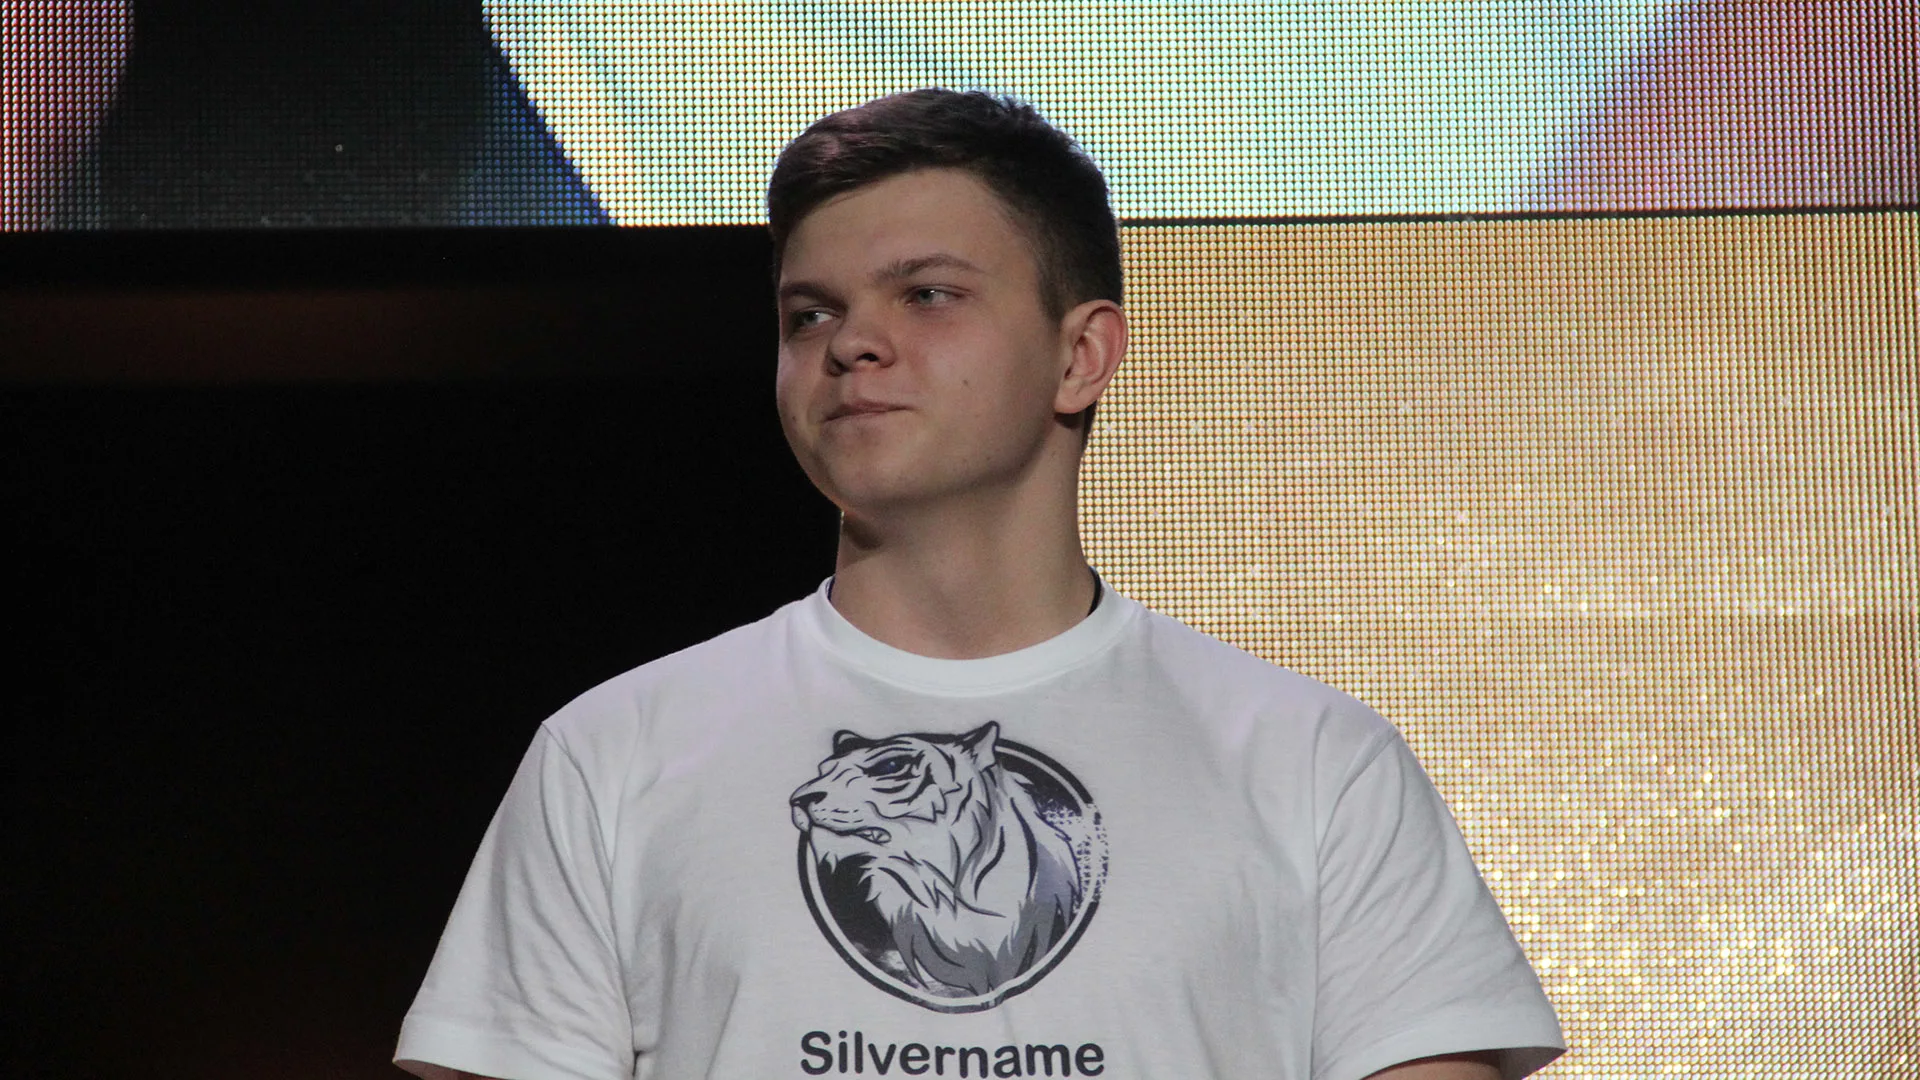 SilverName начал играть в Hearthstone в 2014 году